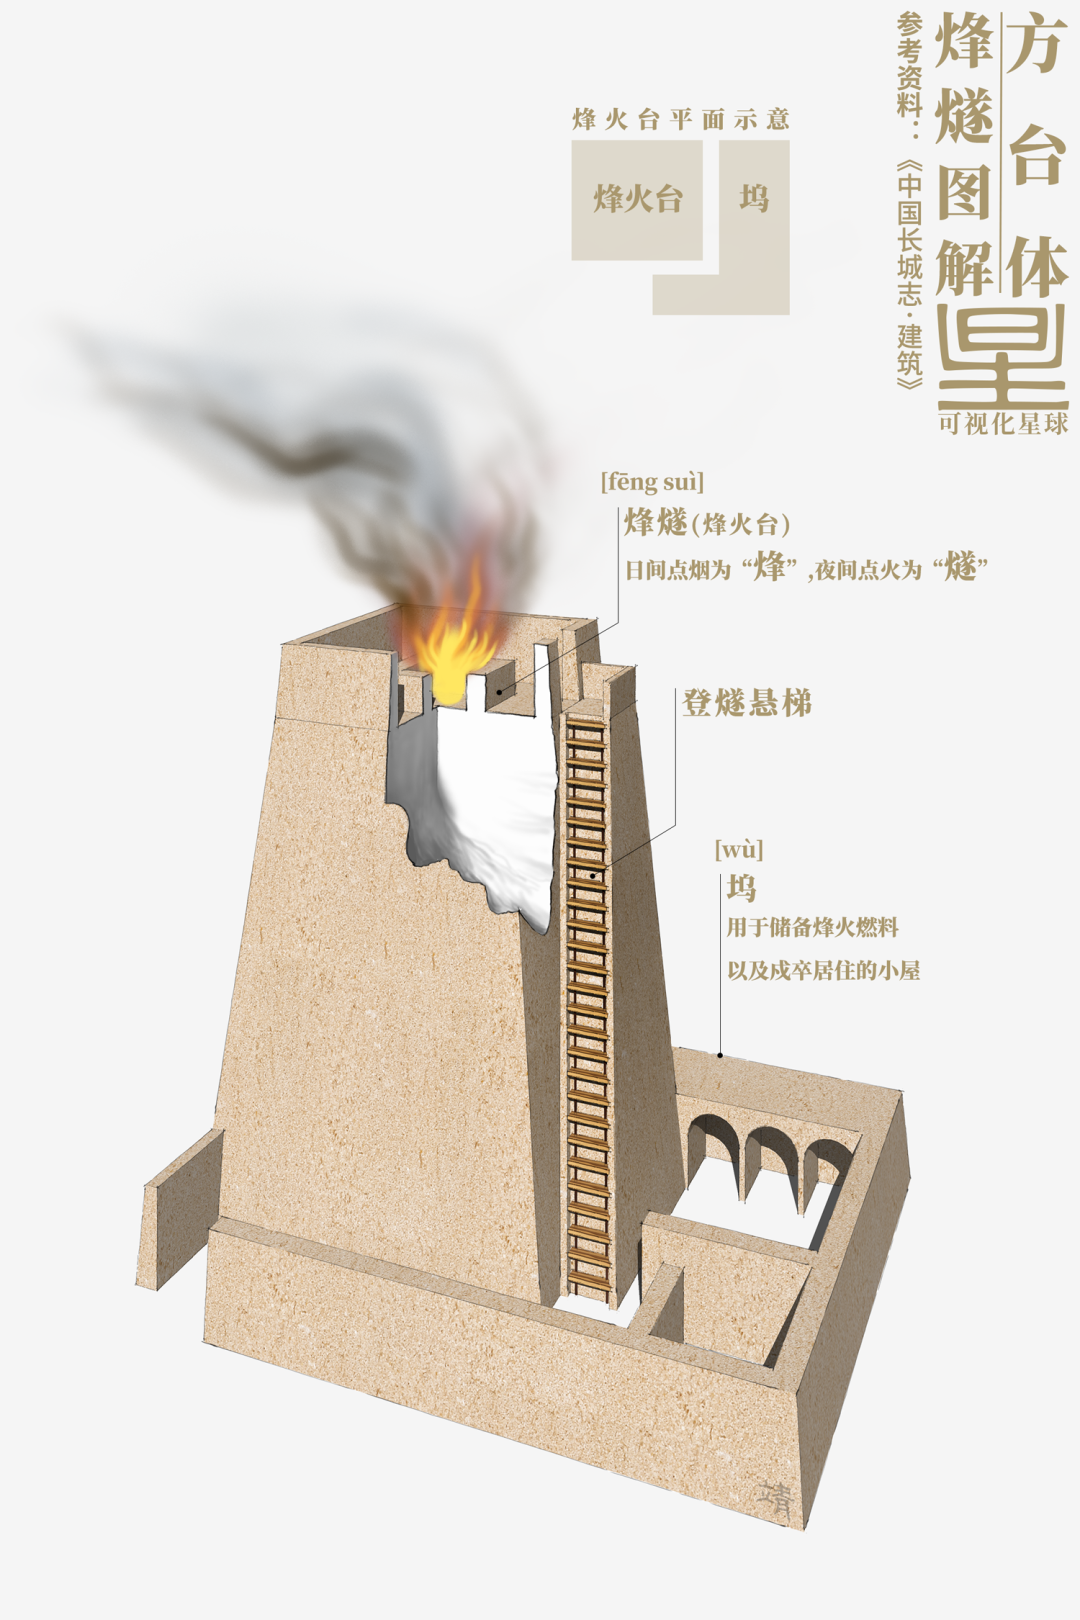 烽火台内部结构图片